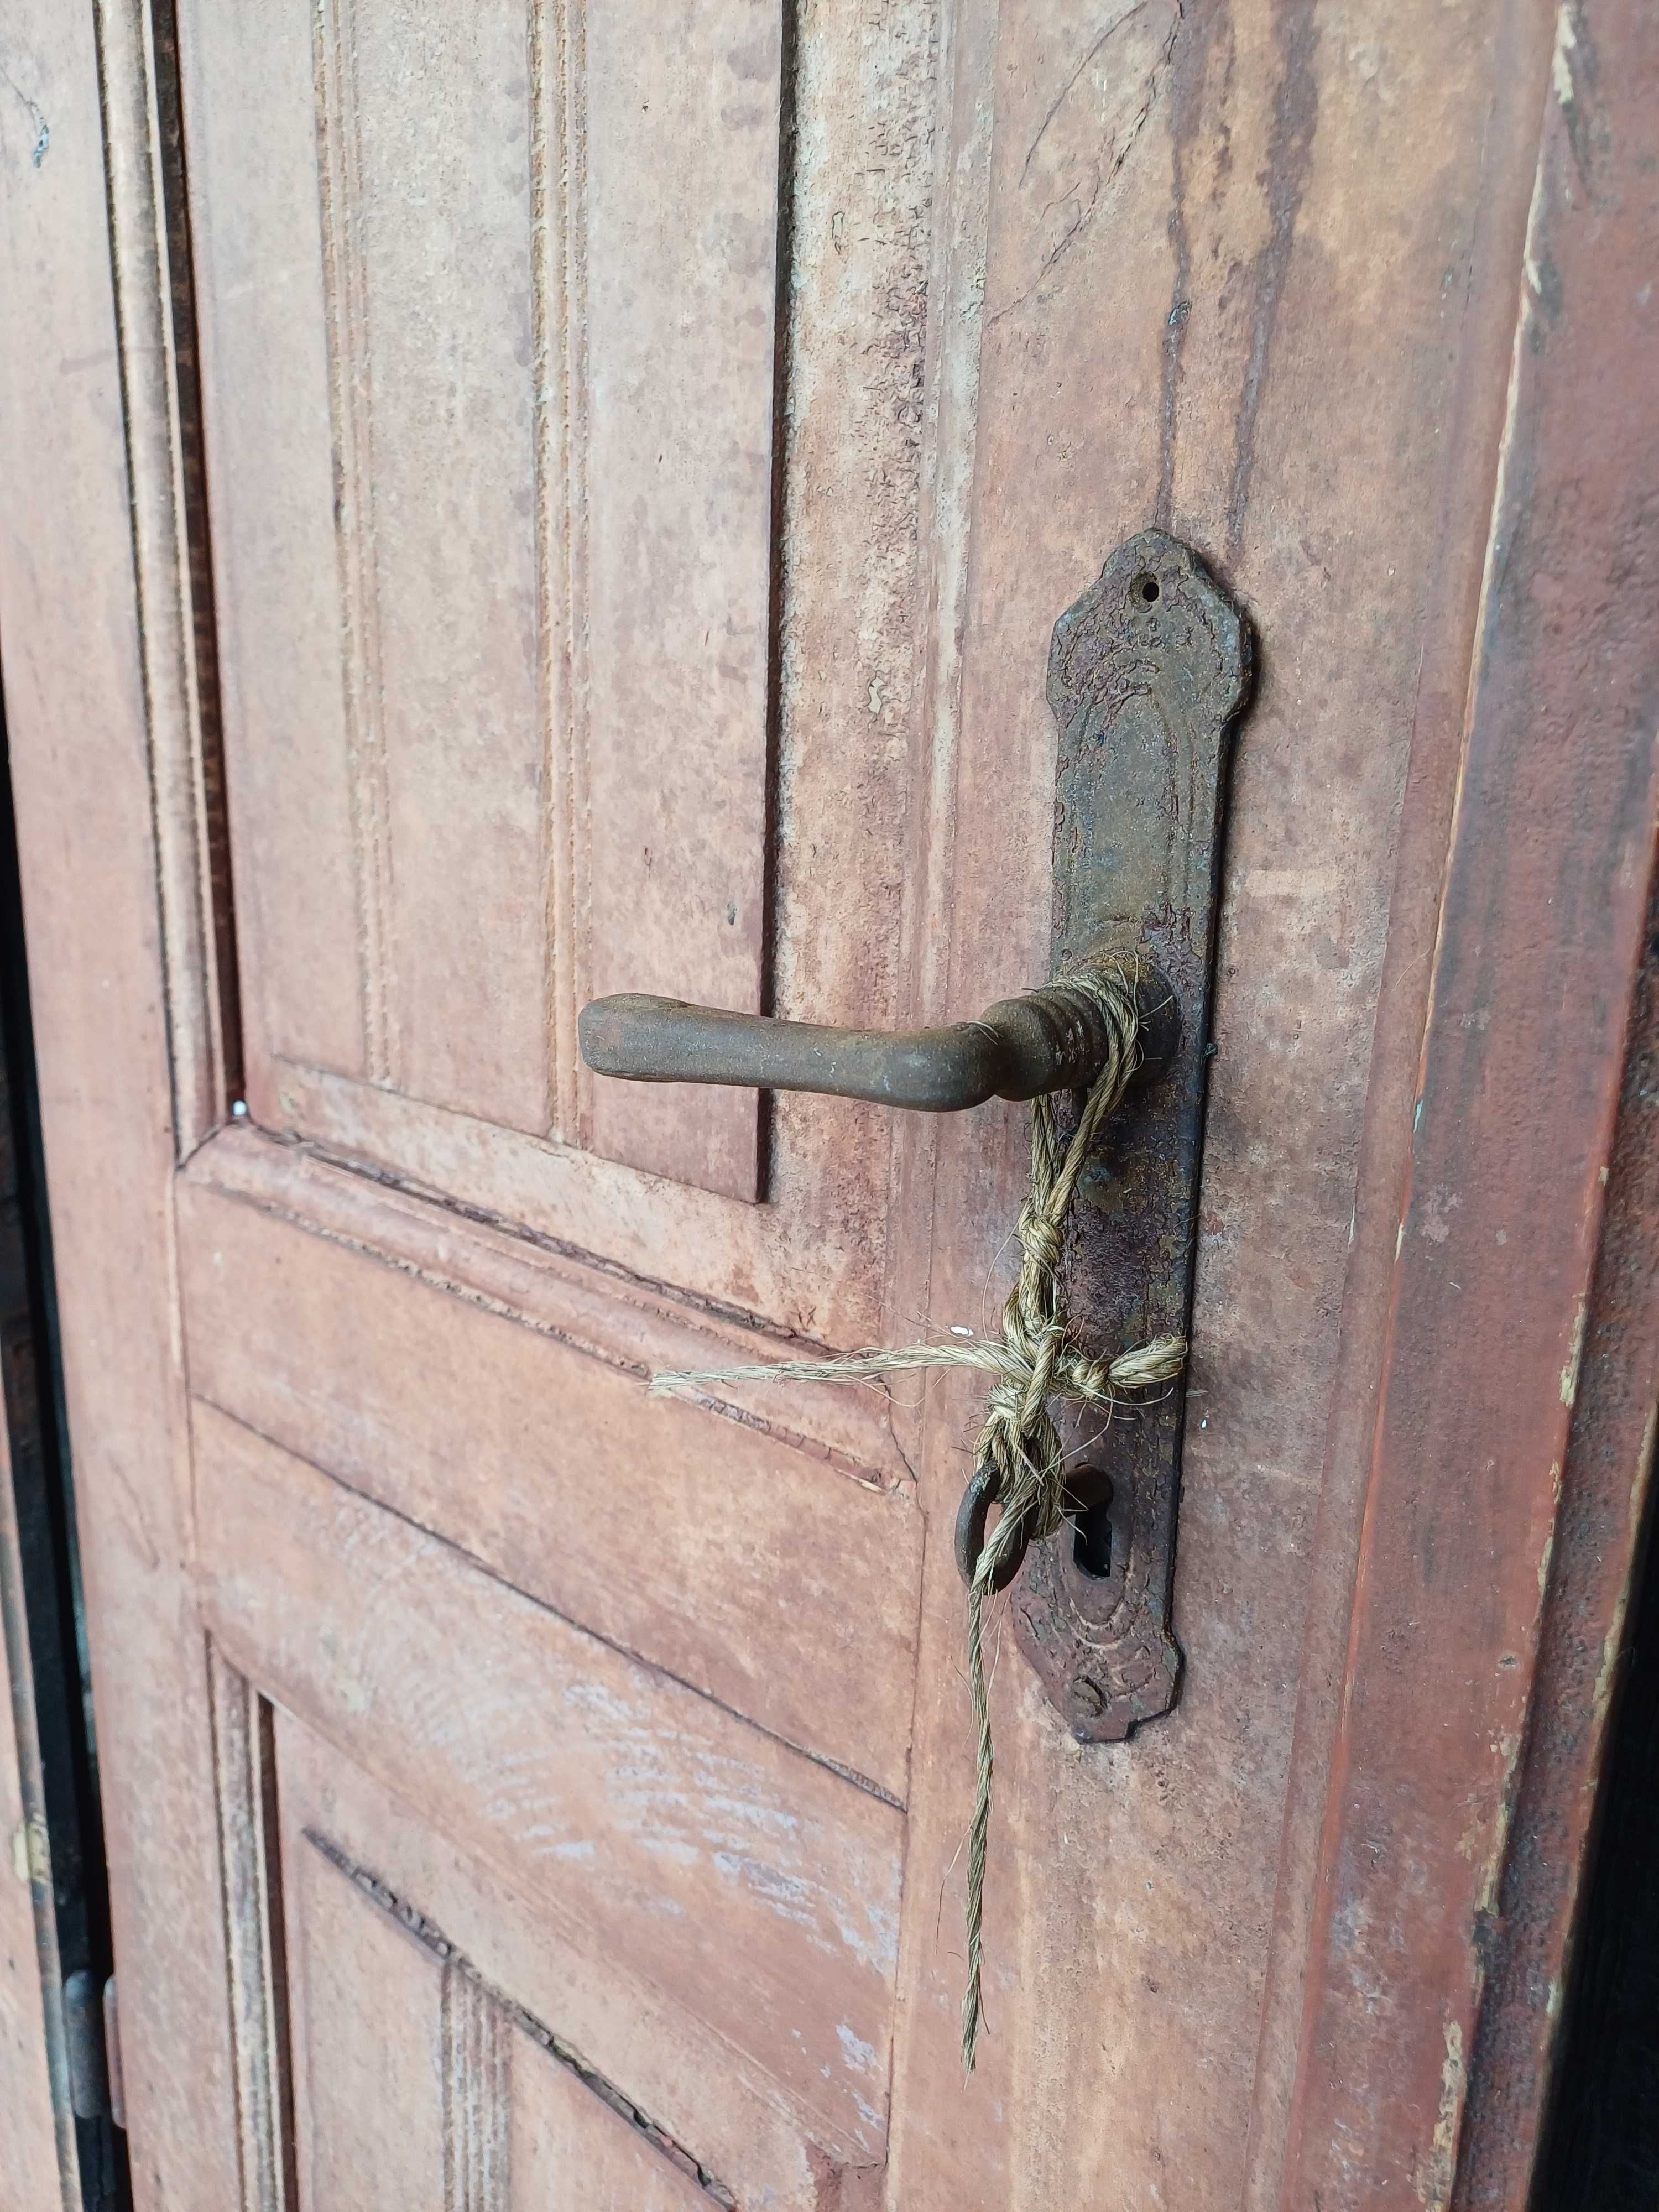 Stare stuletnie drzwi drewniane w bdb stanie